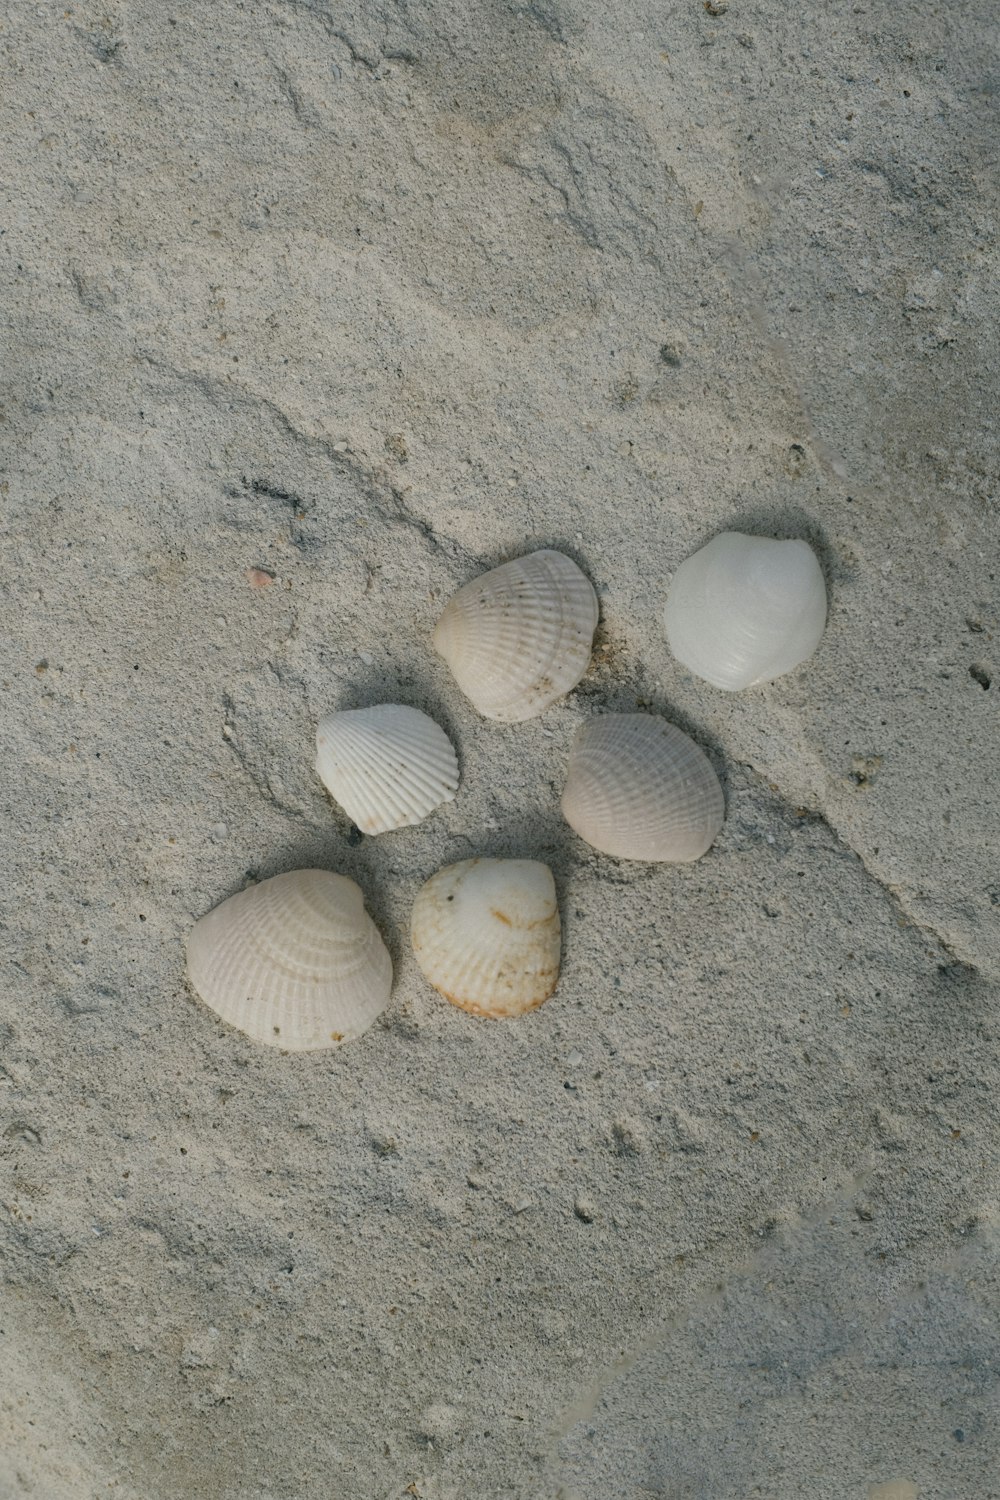 Cuatro conchas marinas en la arena de una playa